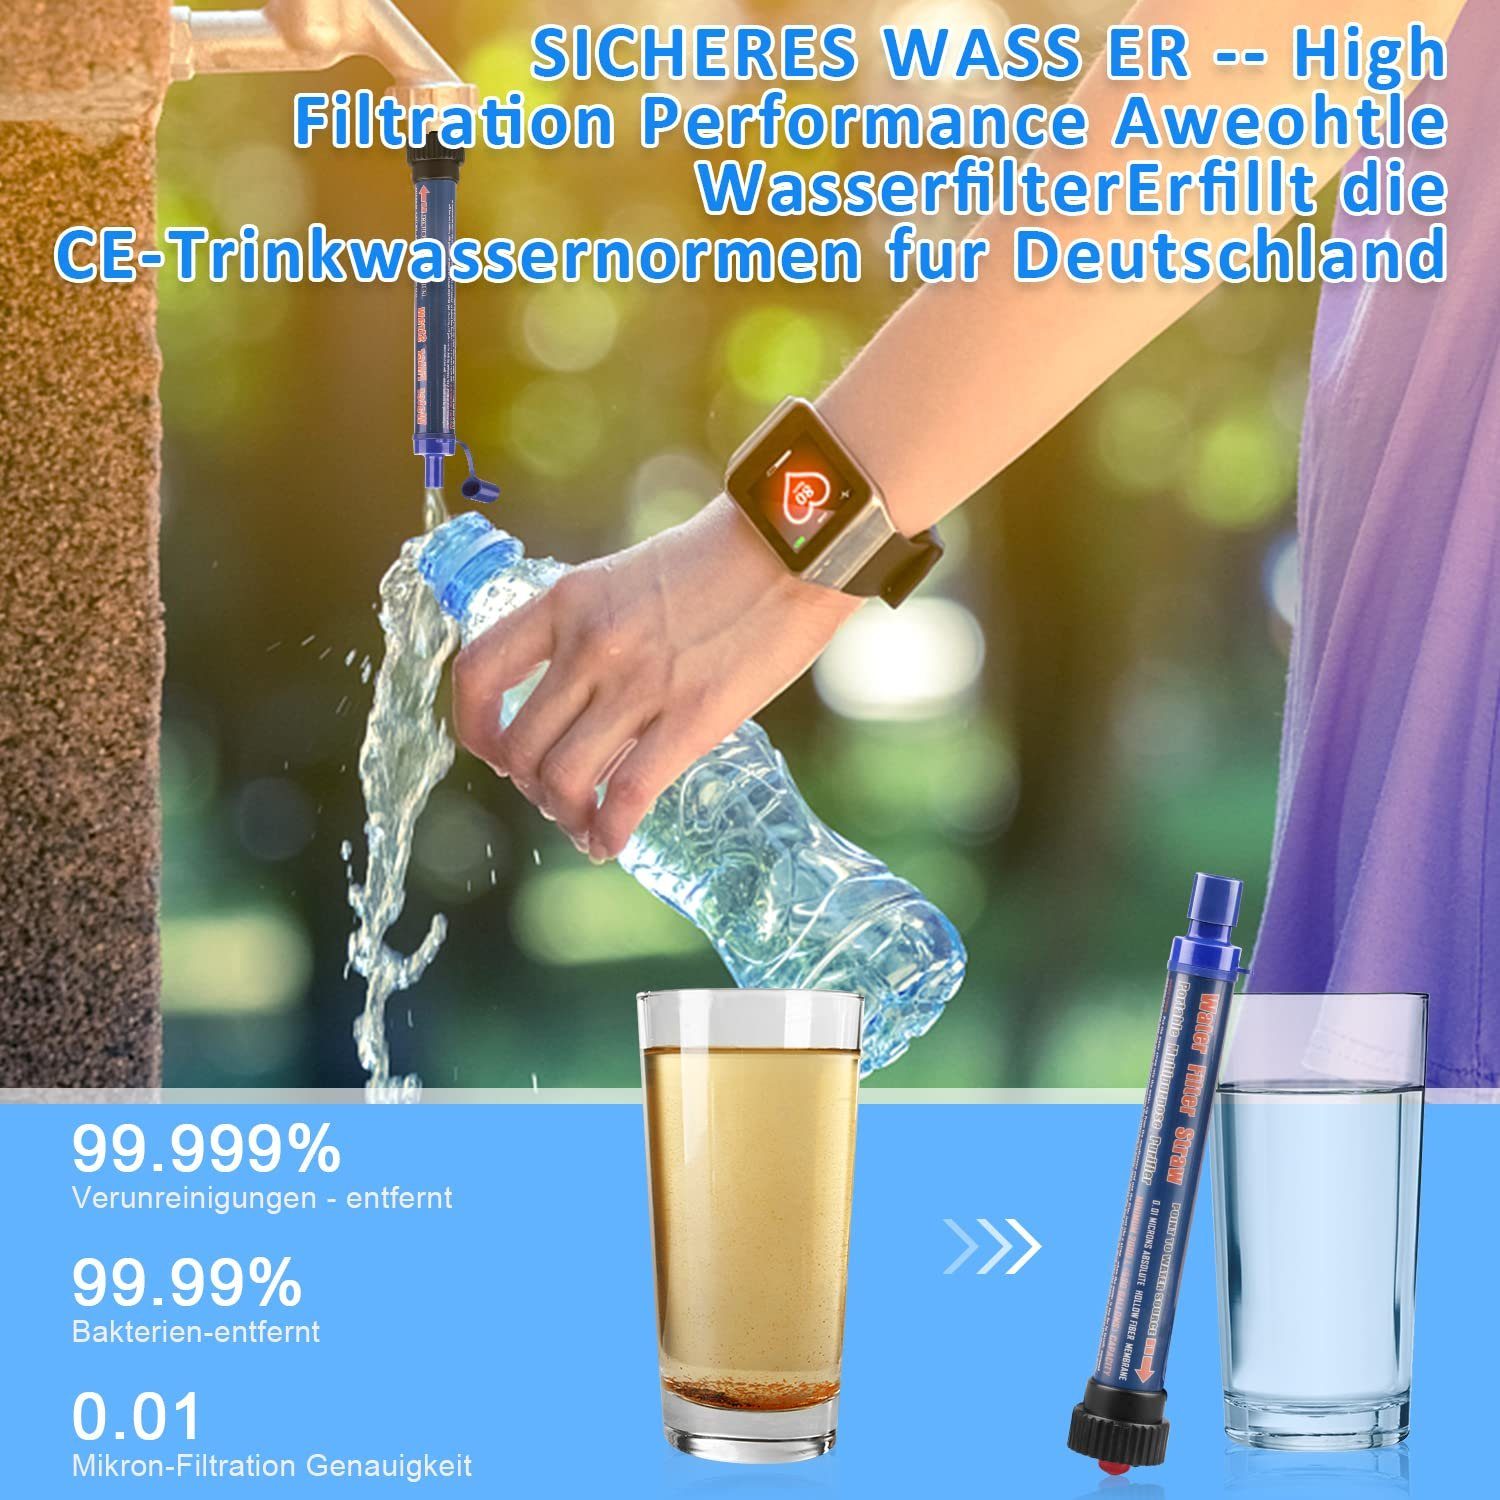 Blau Wasseraufbereiter,Survivalausrüstung, Wasserfilter Bakterien aller und Wasserfilter Camping XDeer abtötet,geeignet für Outdoor,2000L Wandern Keime 99,99%